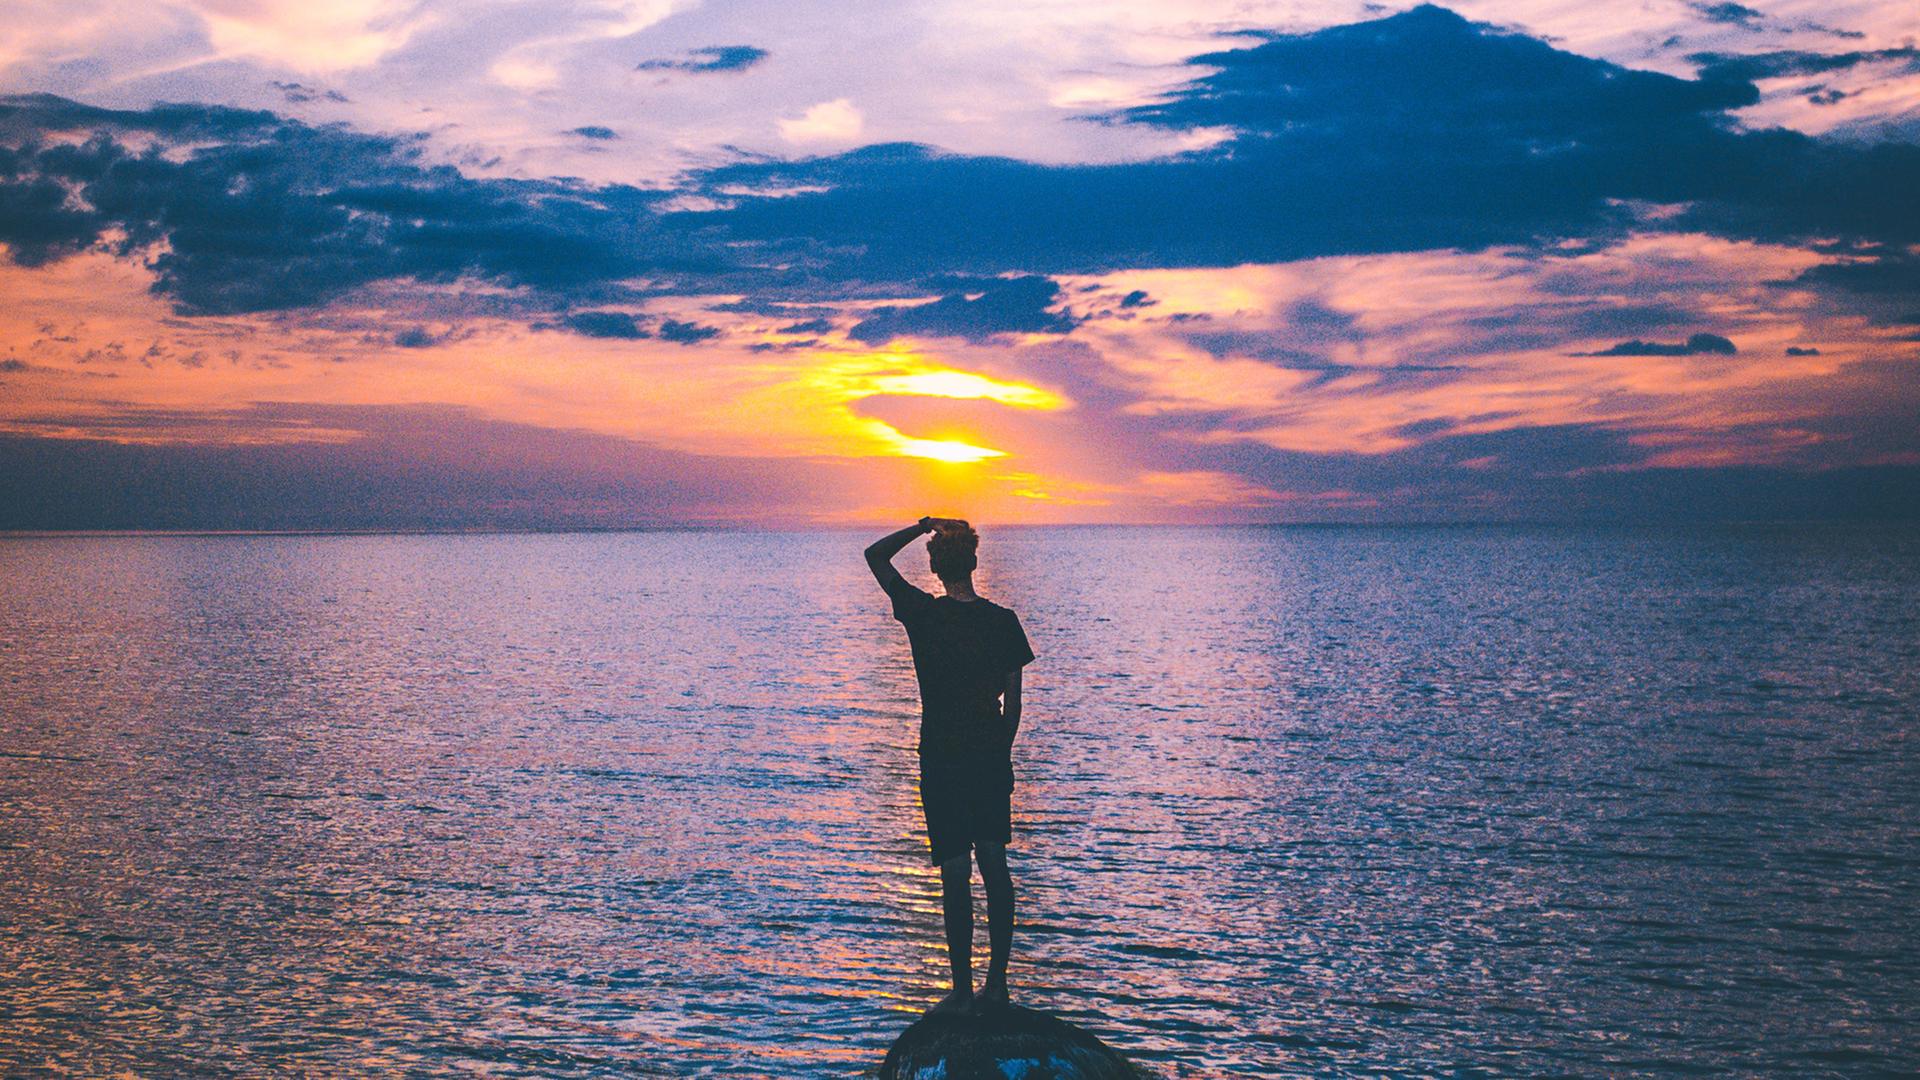 Ein Mann steht auf einem kleinen Felsen im Meer und schaut in die Abendsonne.